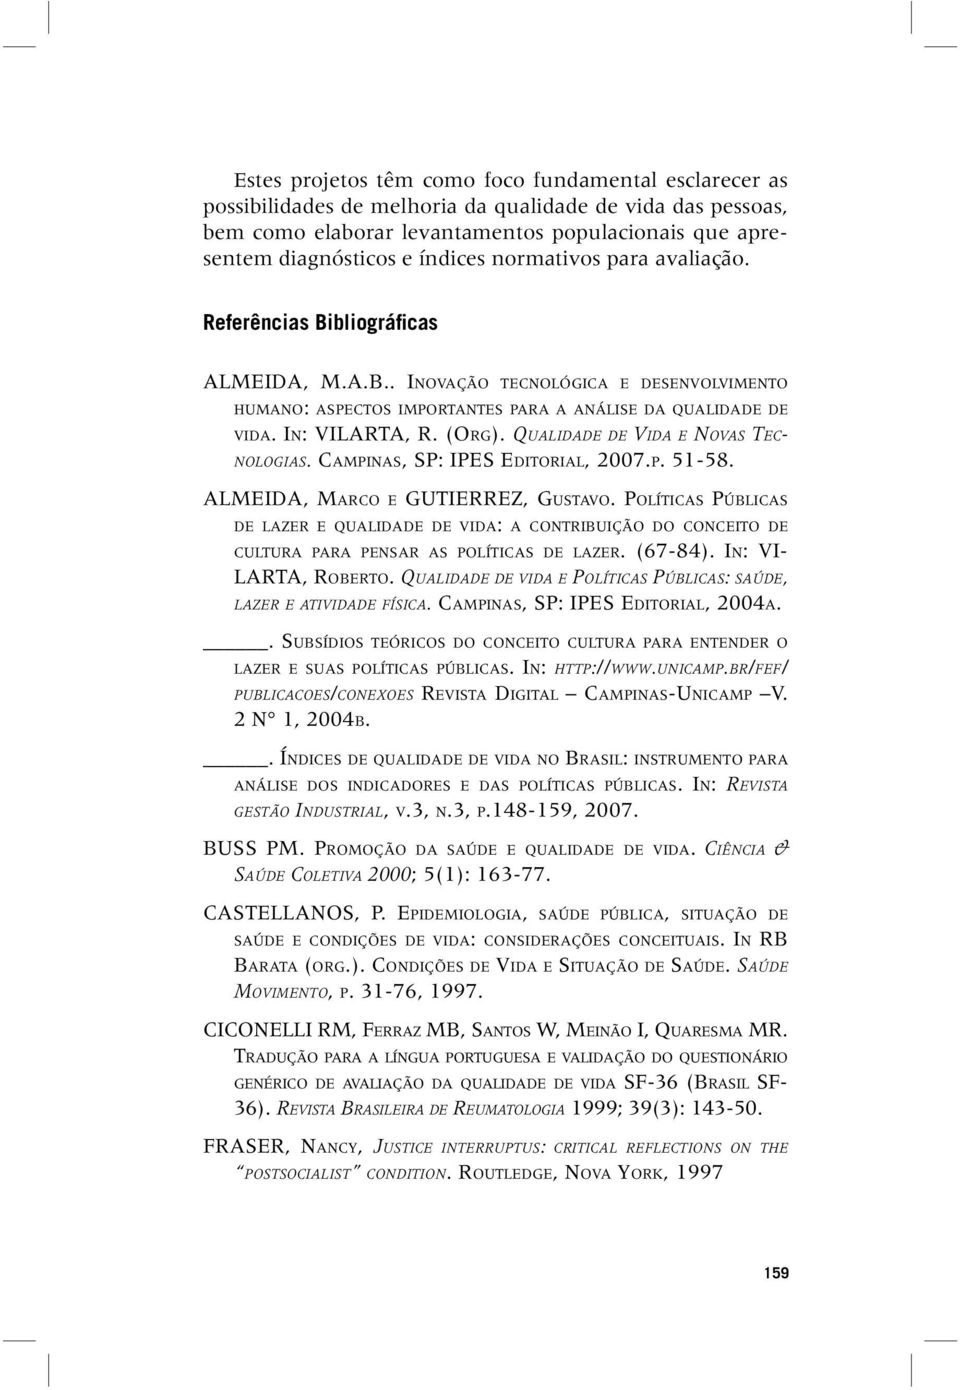 QUALIDADE DE VIDA E NOVAS TEC- NOLOGIAS. CAMPINAS, SP: IPES EDITORIAL, 2007.P. 51-58. ALMEIDA, MARCO E GUTIERREZ, GUSTAVO.